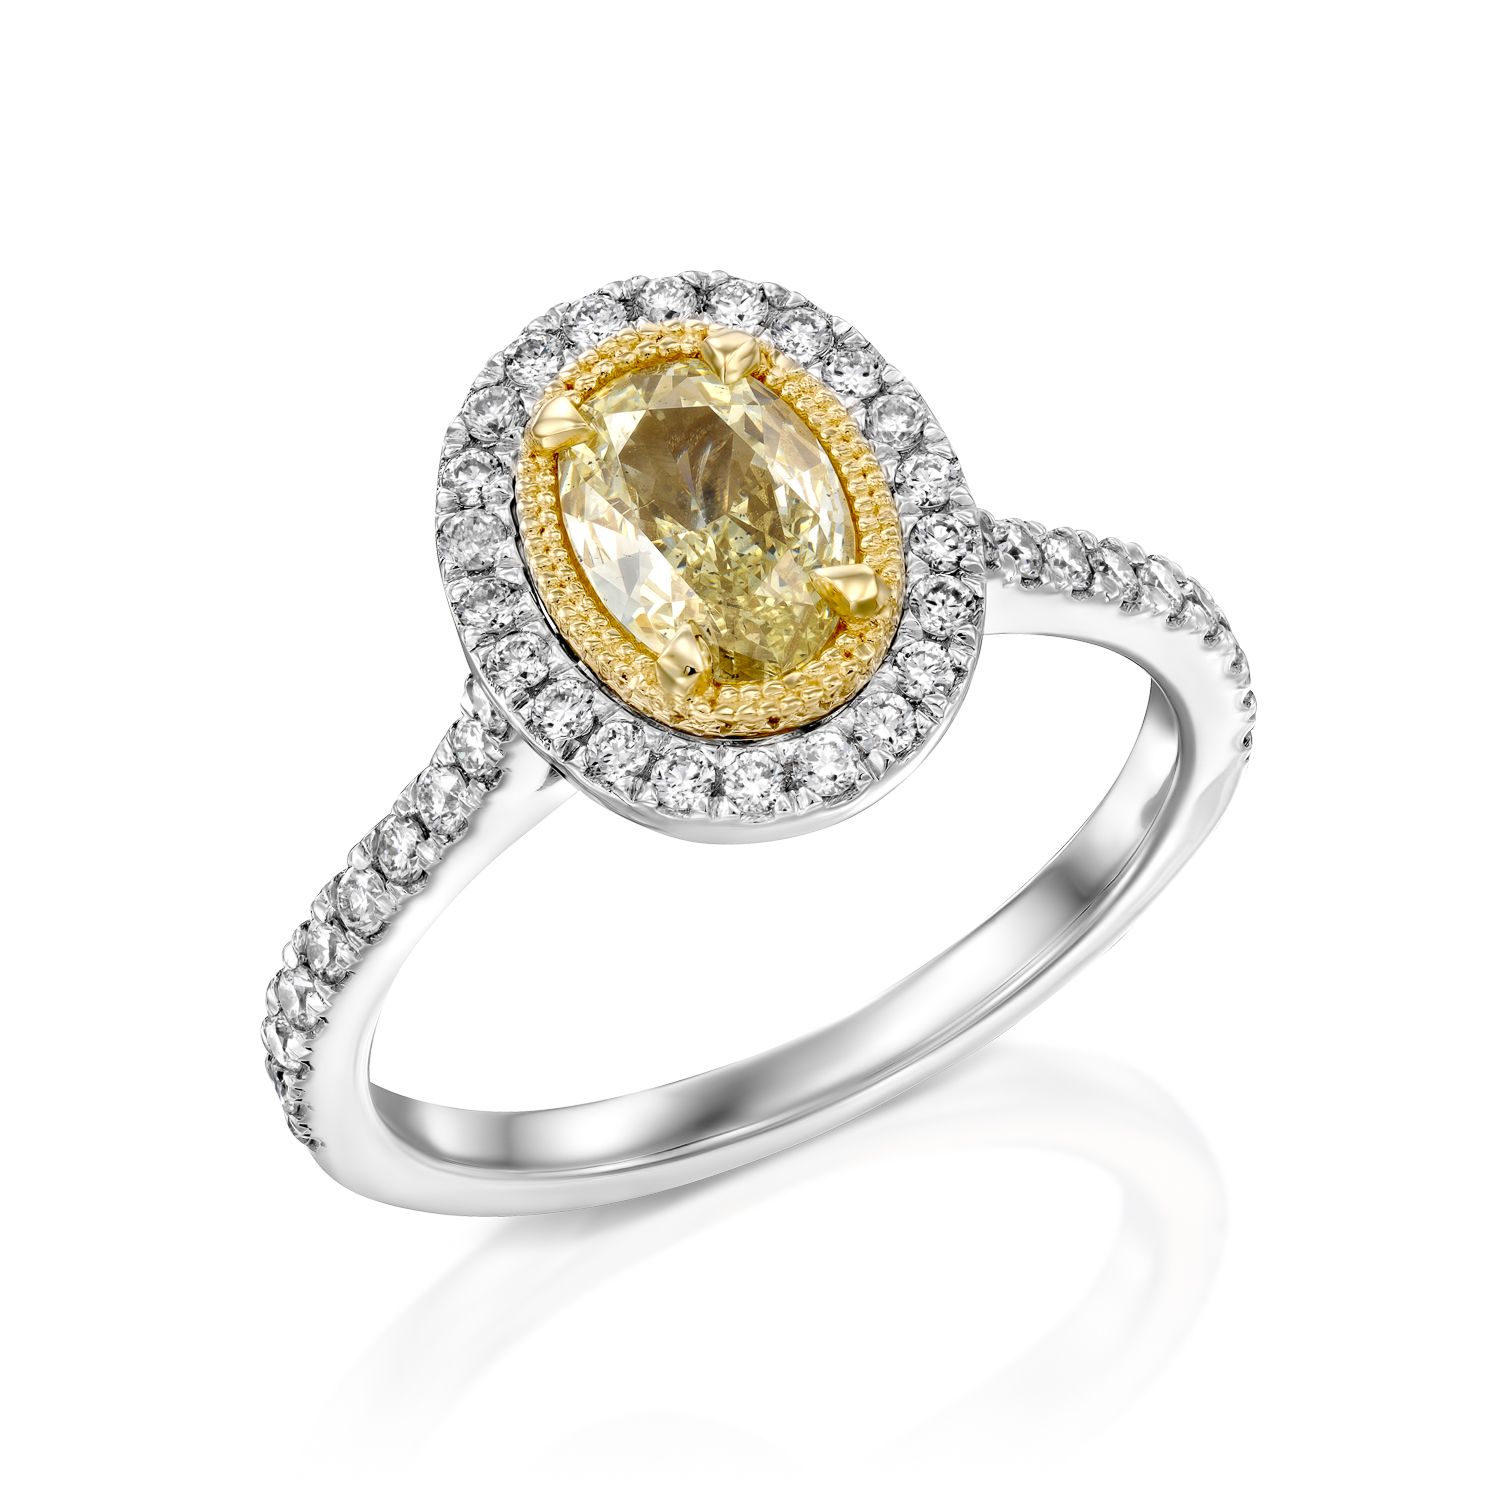 טבעת אלגנטית הכוללת אבן חן בחיתוך אובלי זהוב-צהוב מוקפת יהלומים נוצצים המשובצים על רצועת זהב לבן מלוטש.